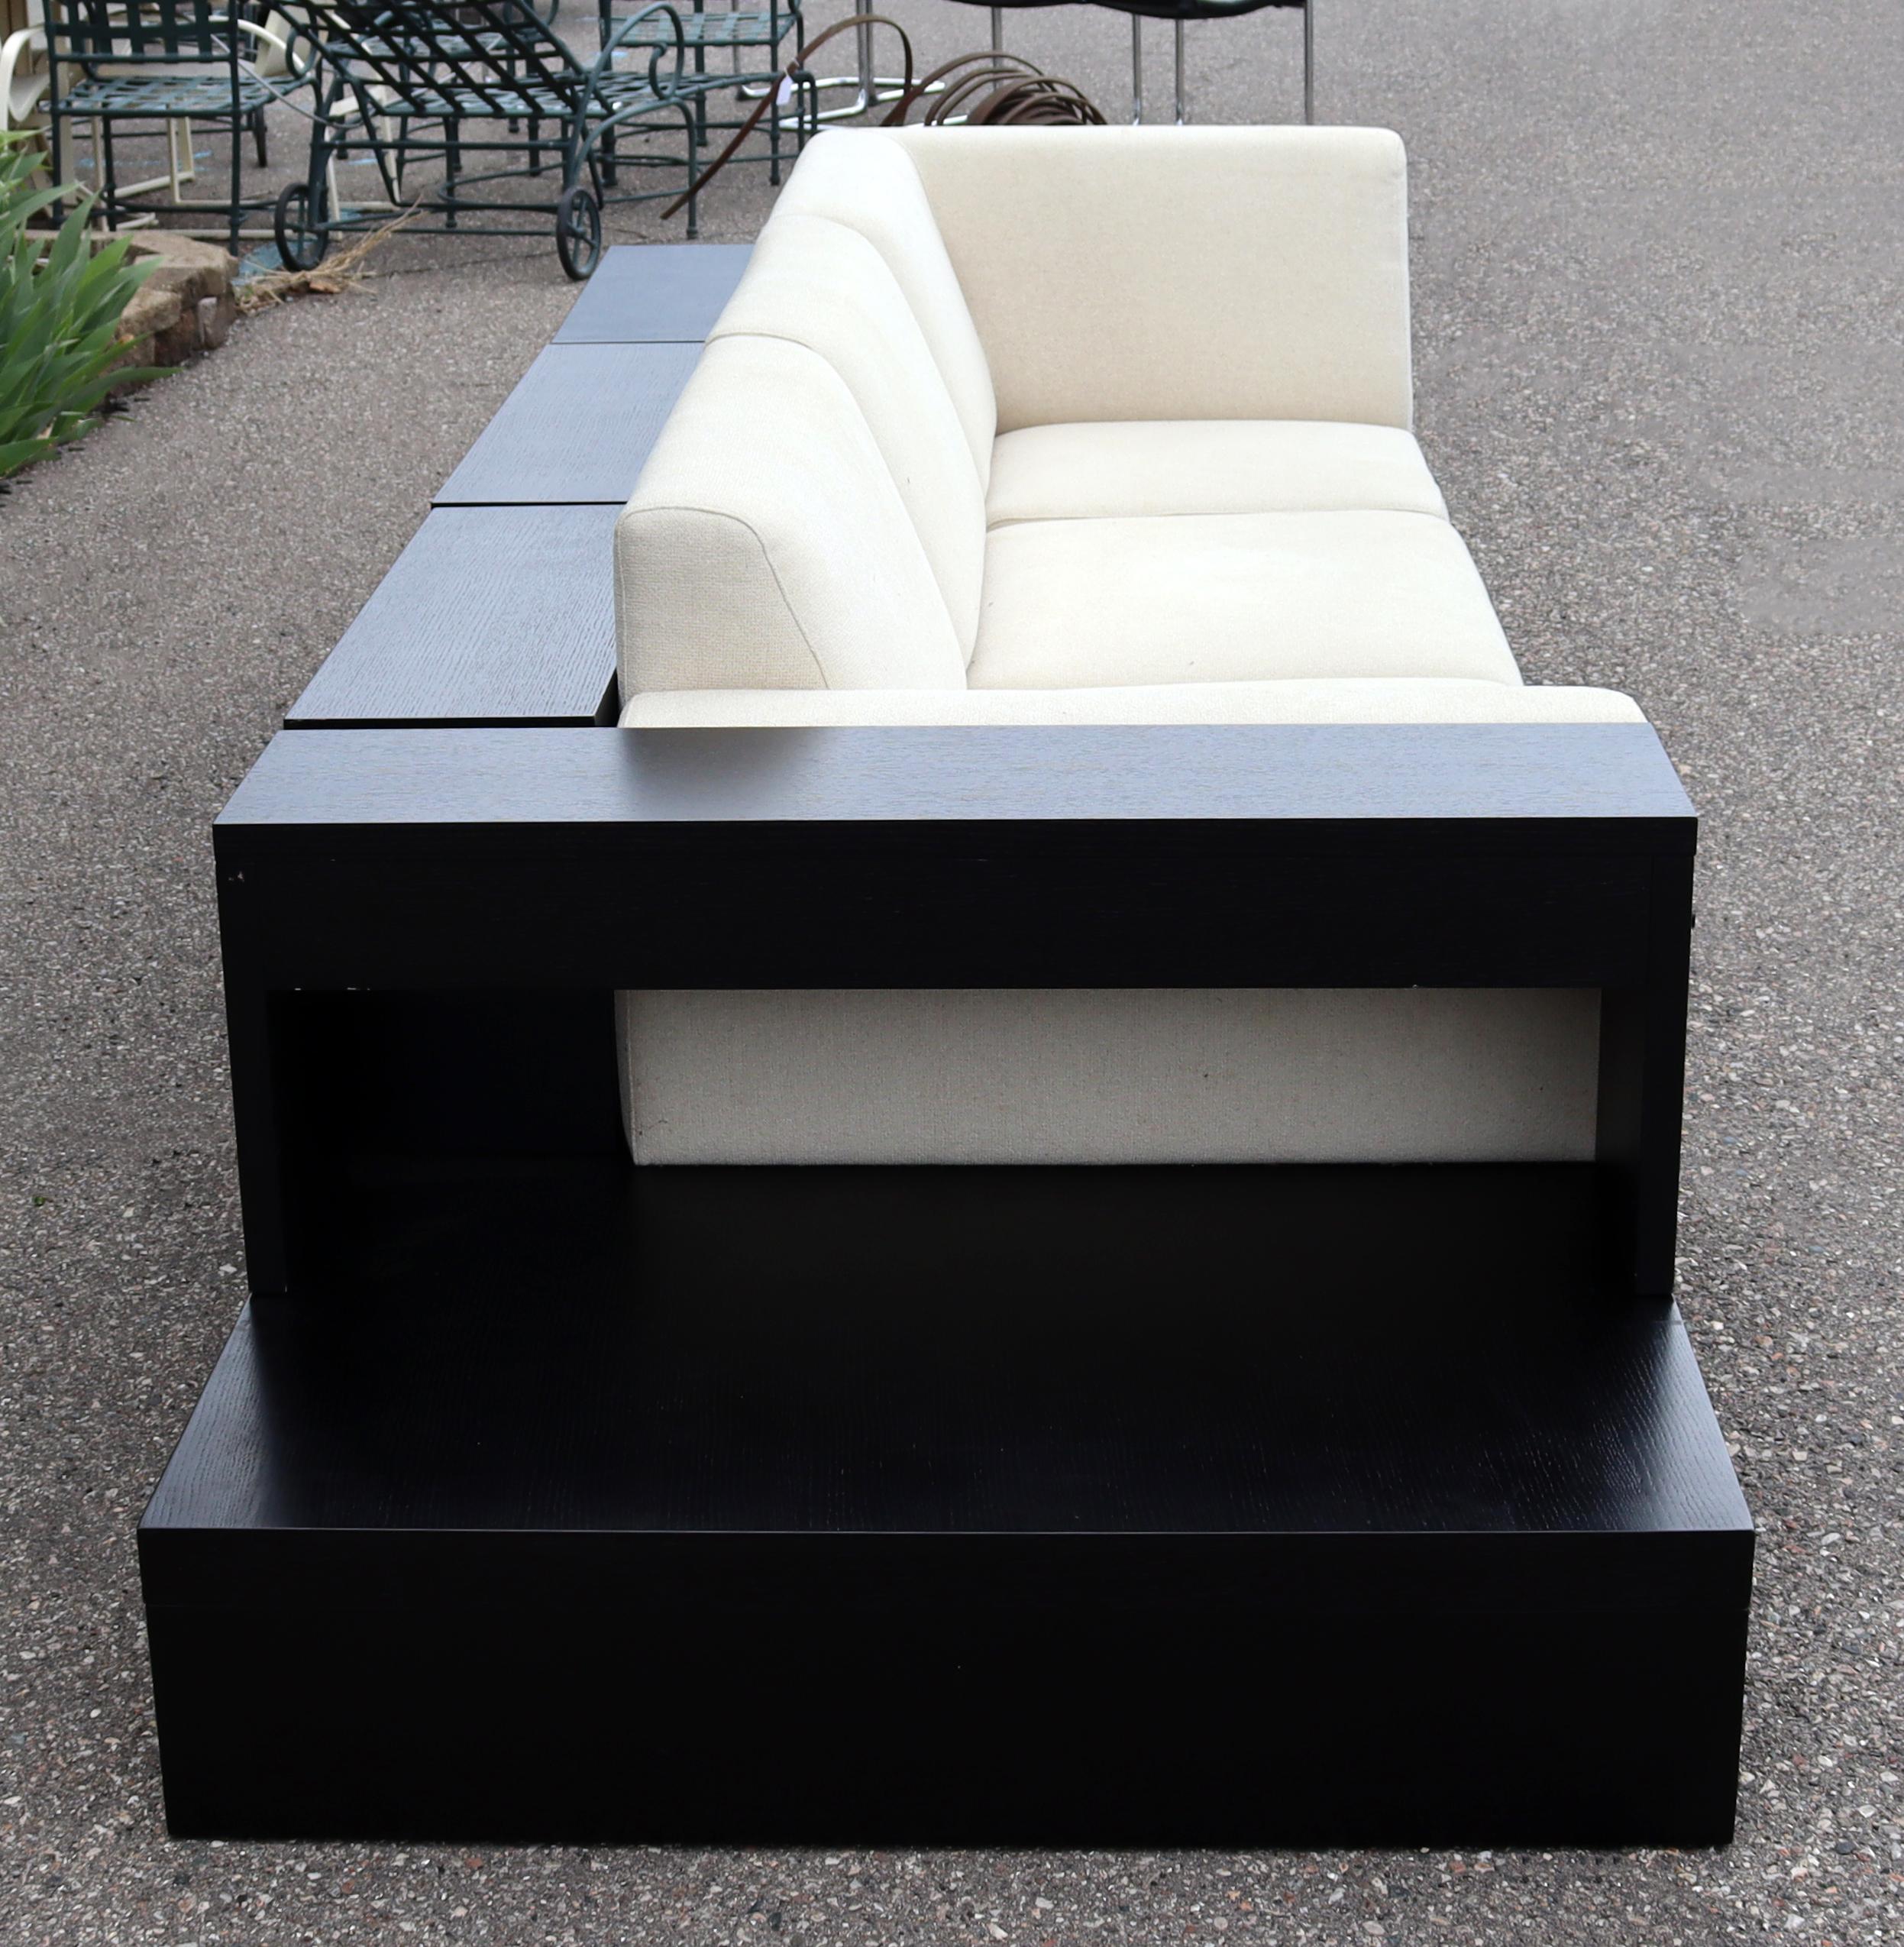 Fabric Contemporary Modernist Cream Sofa on Platform with Shelving